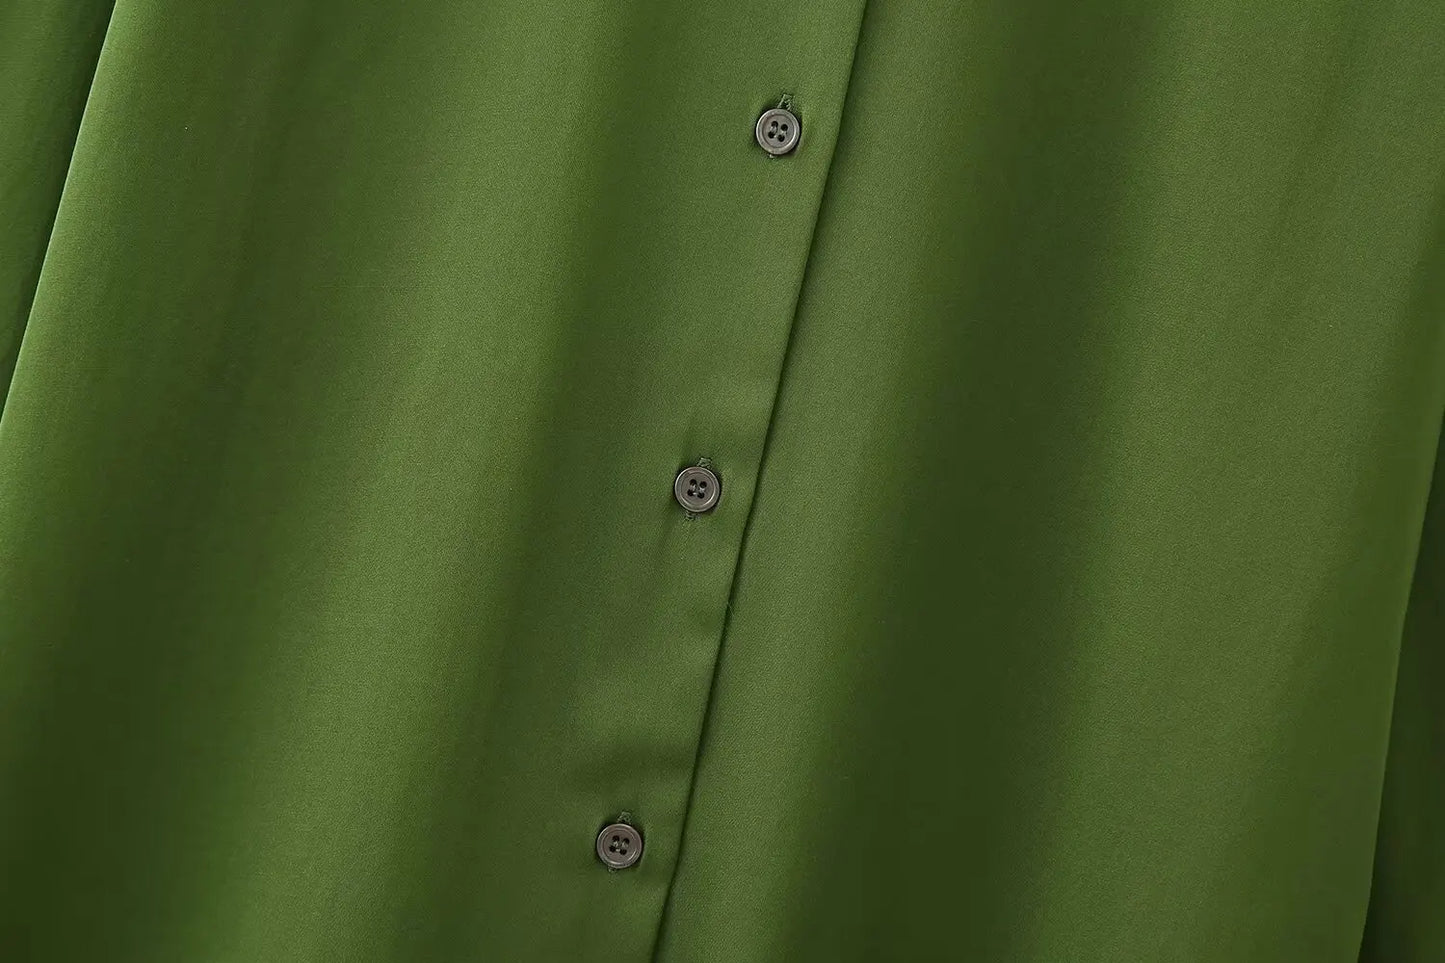 Camisa larga de satén verde 